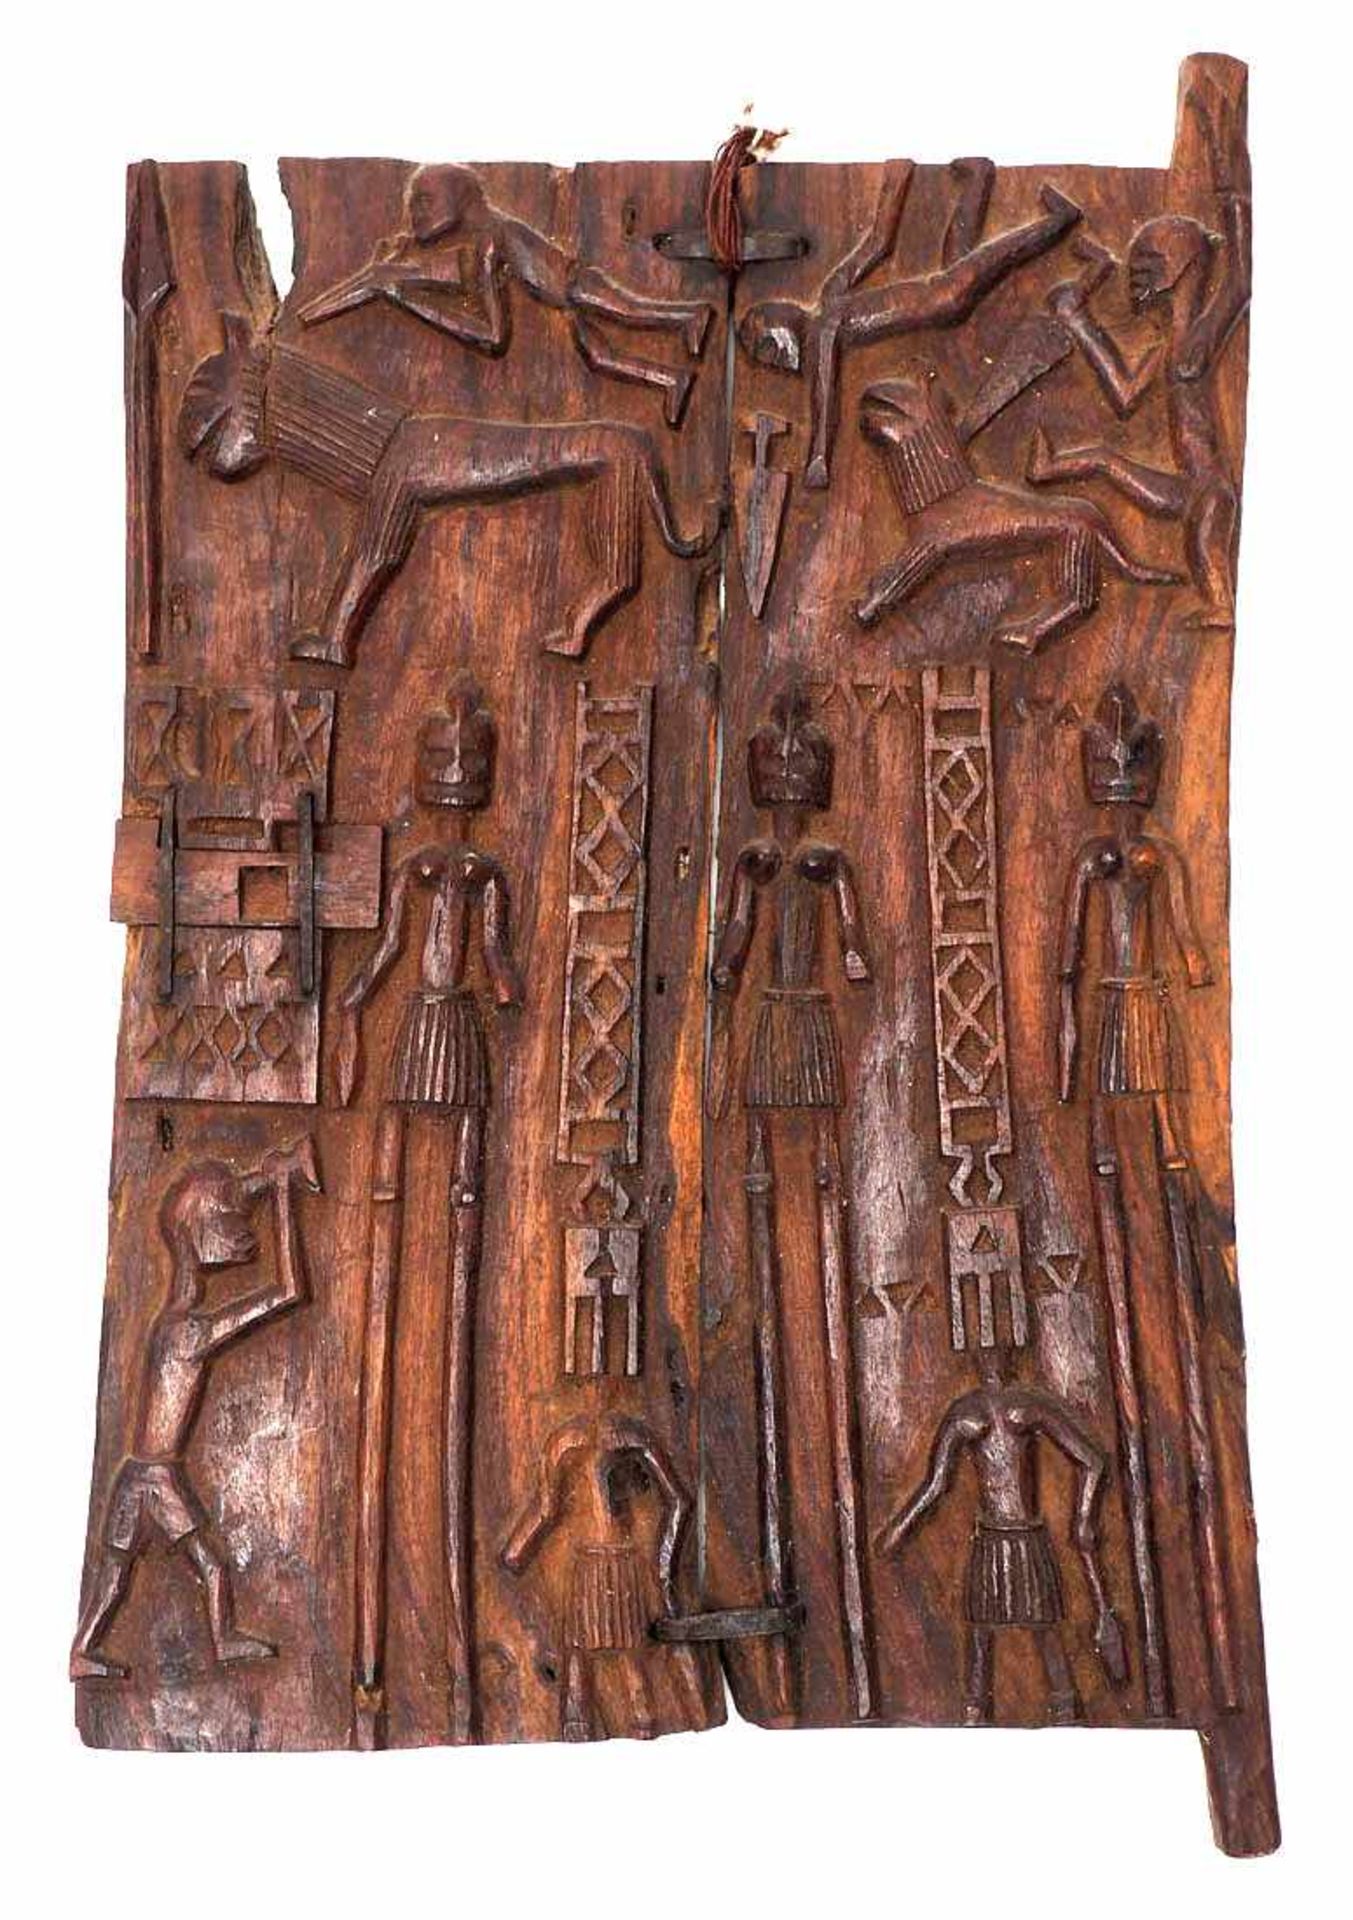 Kornspeichertür, Dogon, Mali Fein geschnitzt, mit menschlichen Figuren, Löwen und Jägern. 50x36cm.